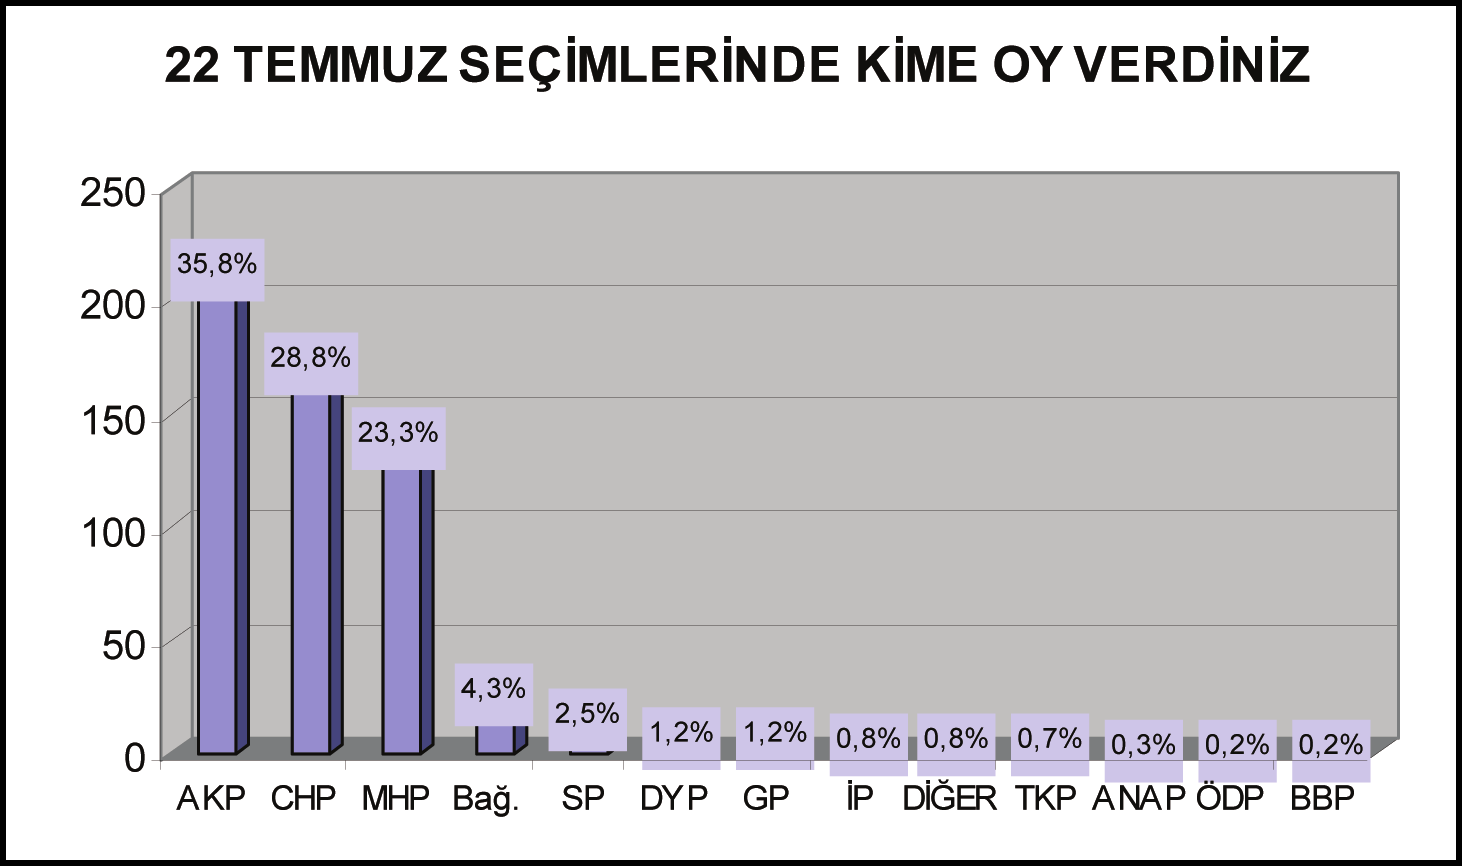 AKP, OY KAYBETTİ Üyelerimizin yüzde 35,8 i 22 Temmuz da AKP yi desteklerken, CHP yi destekleyenlerin oranı yüzde 28,8, MHP yi destekleyenlerin oranı ise yüzde 23,3 düzeyinde gerçekleşti.